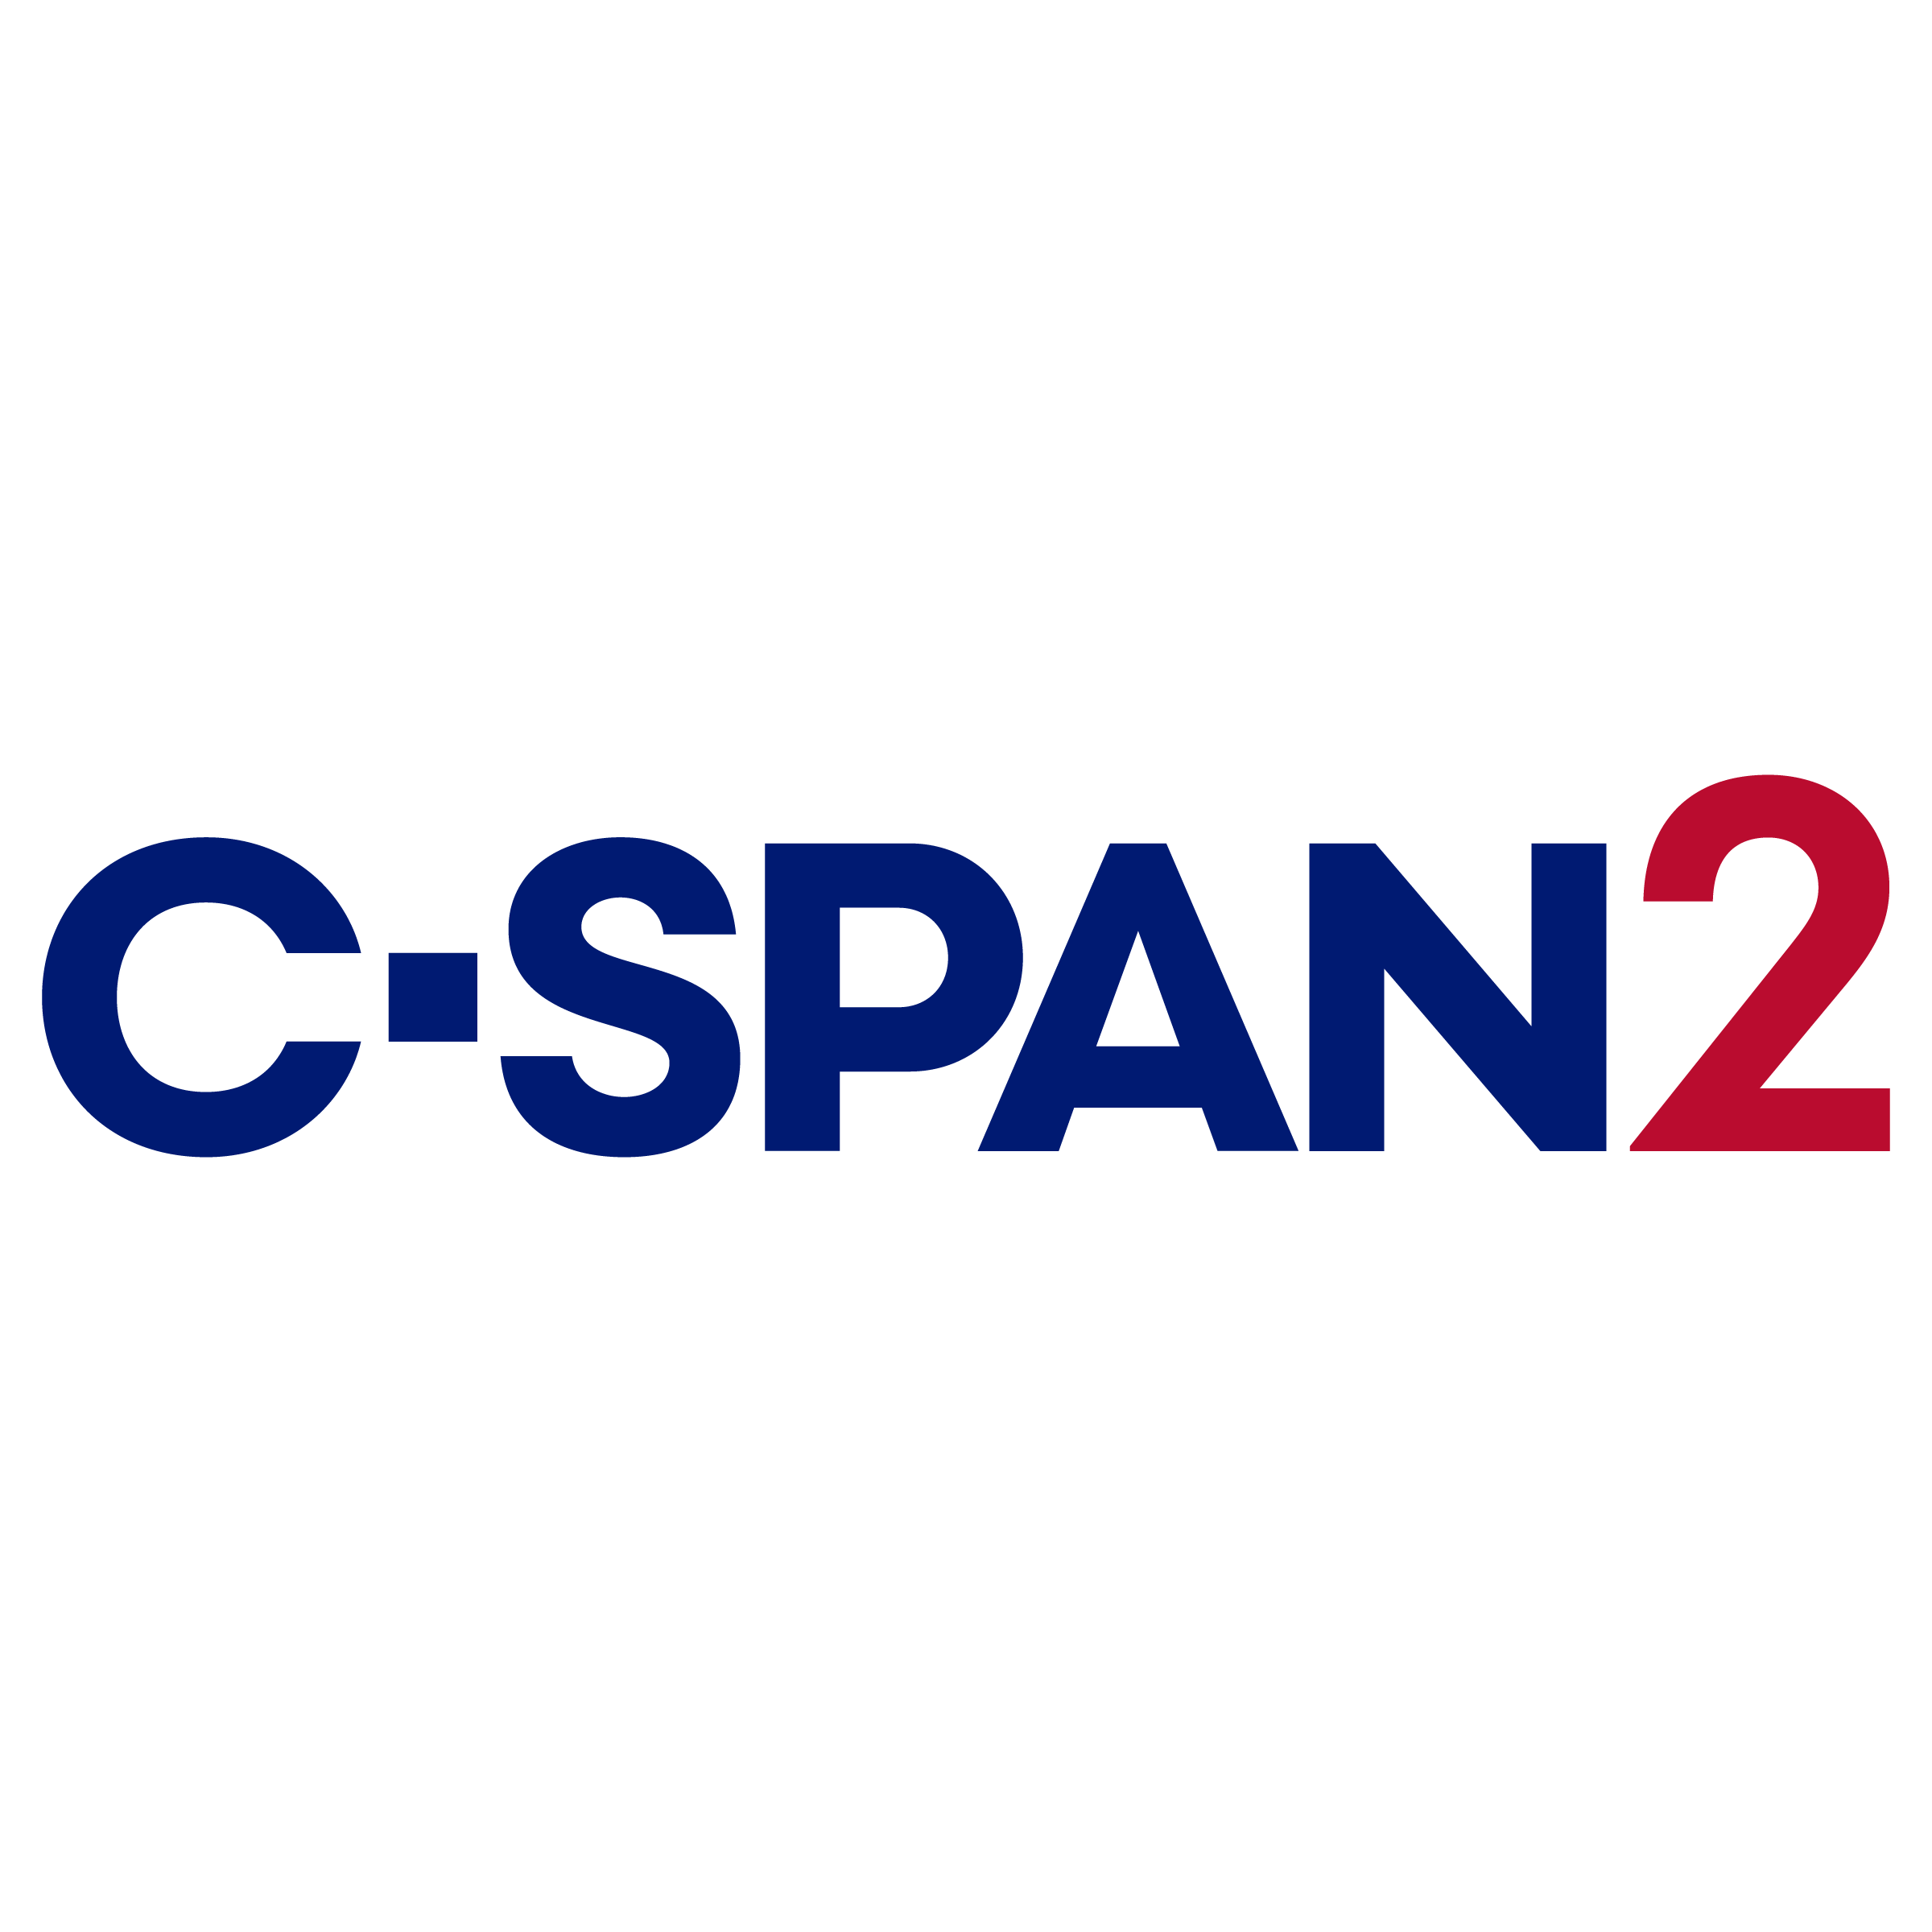 CSPAN2 Logo